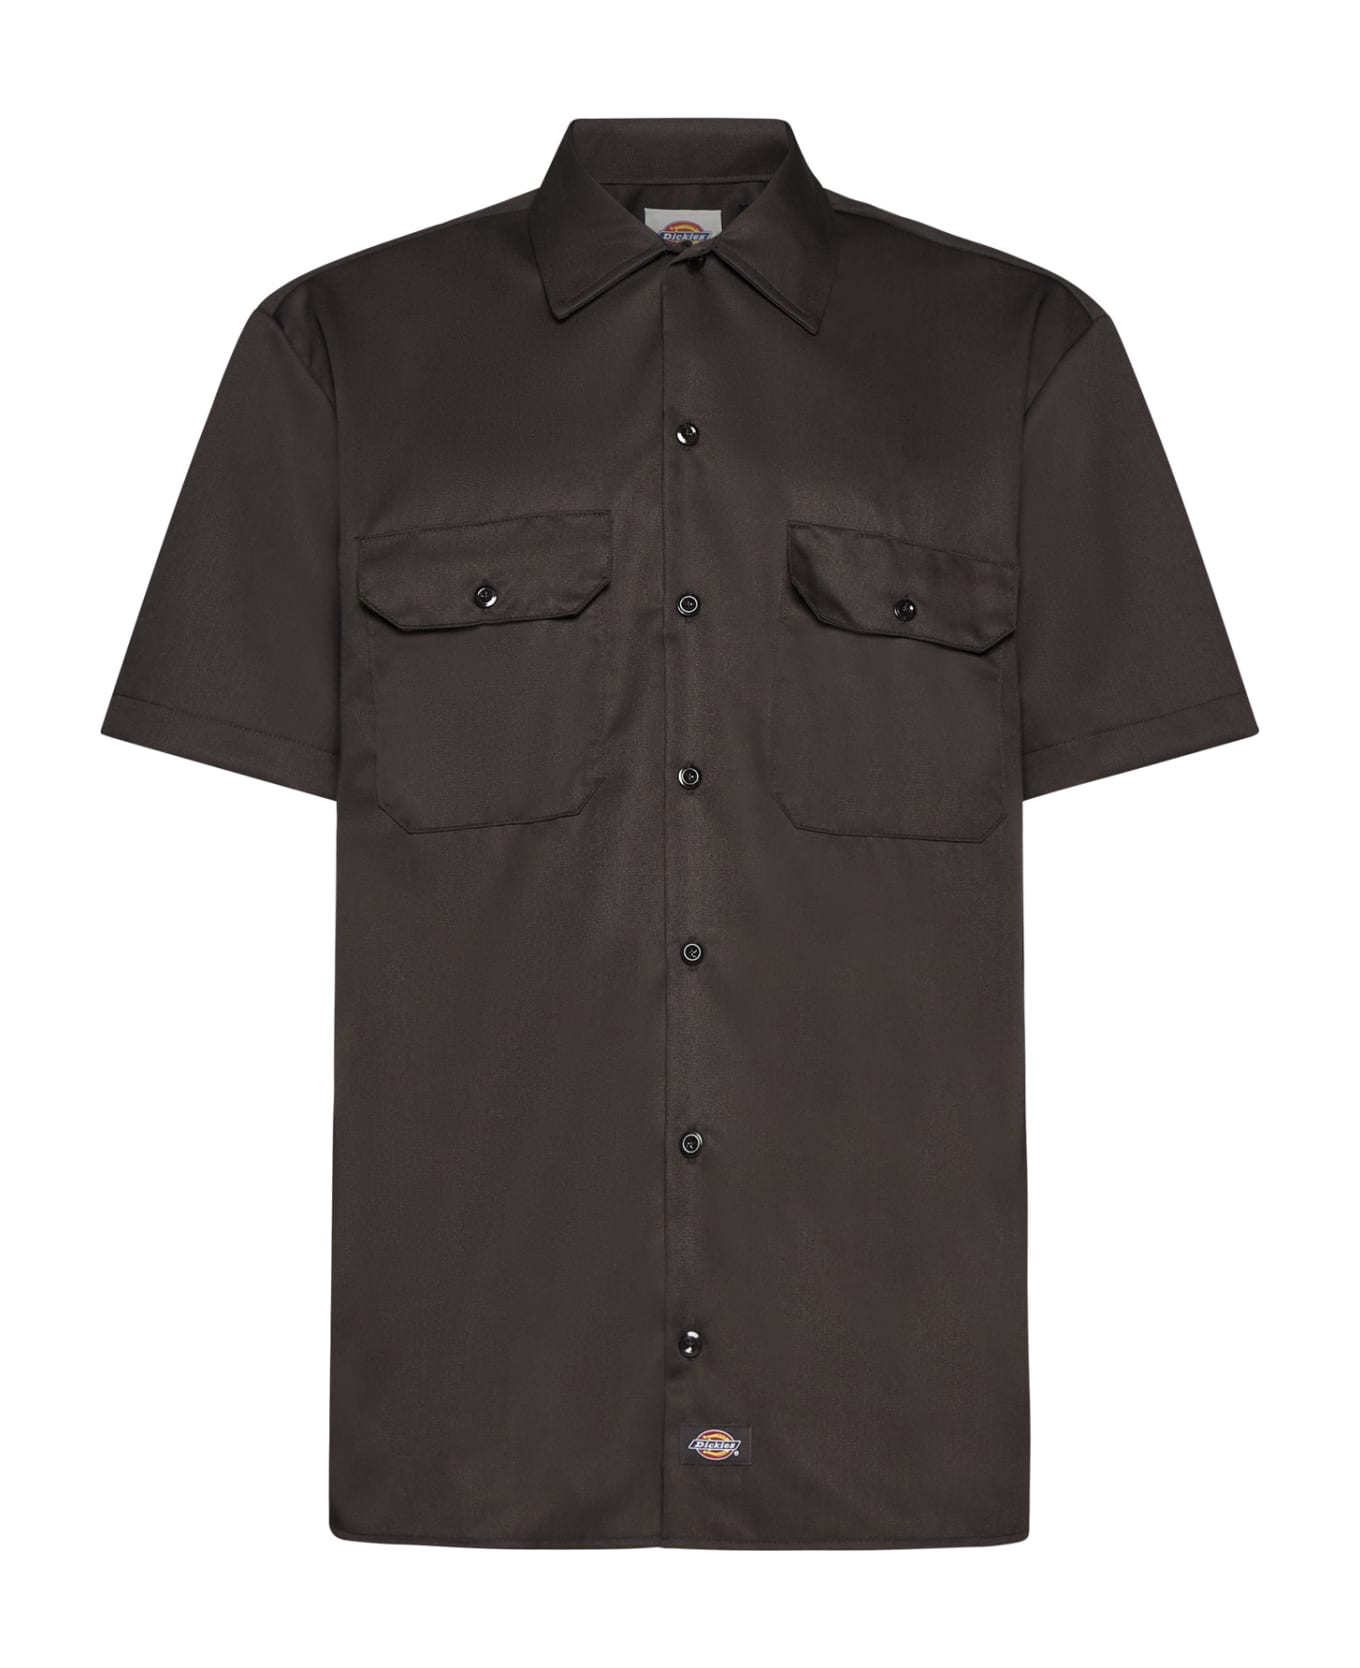 Dickies Shirt - Dark brown